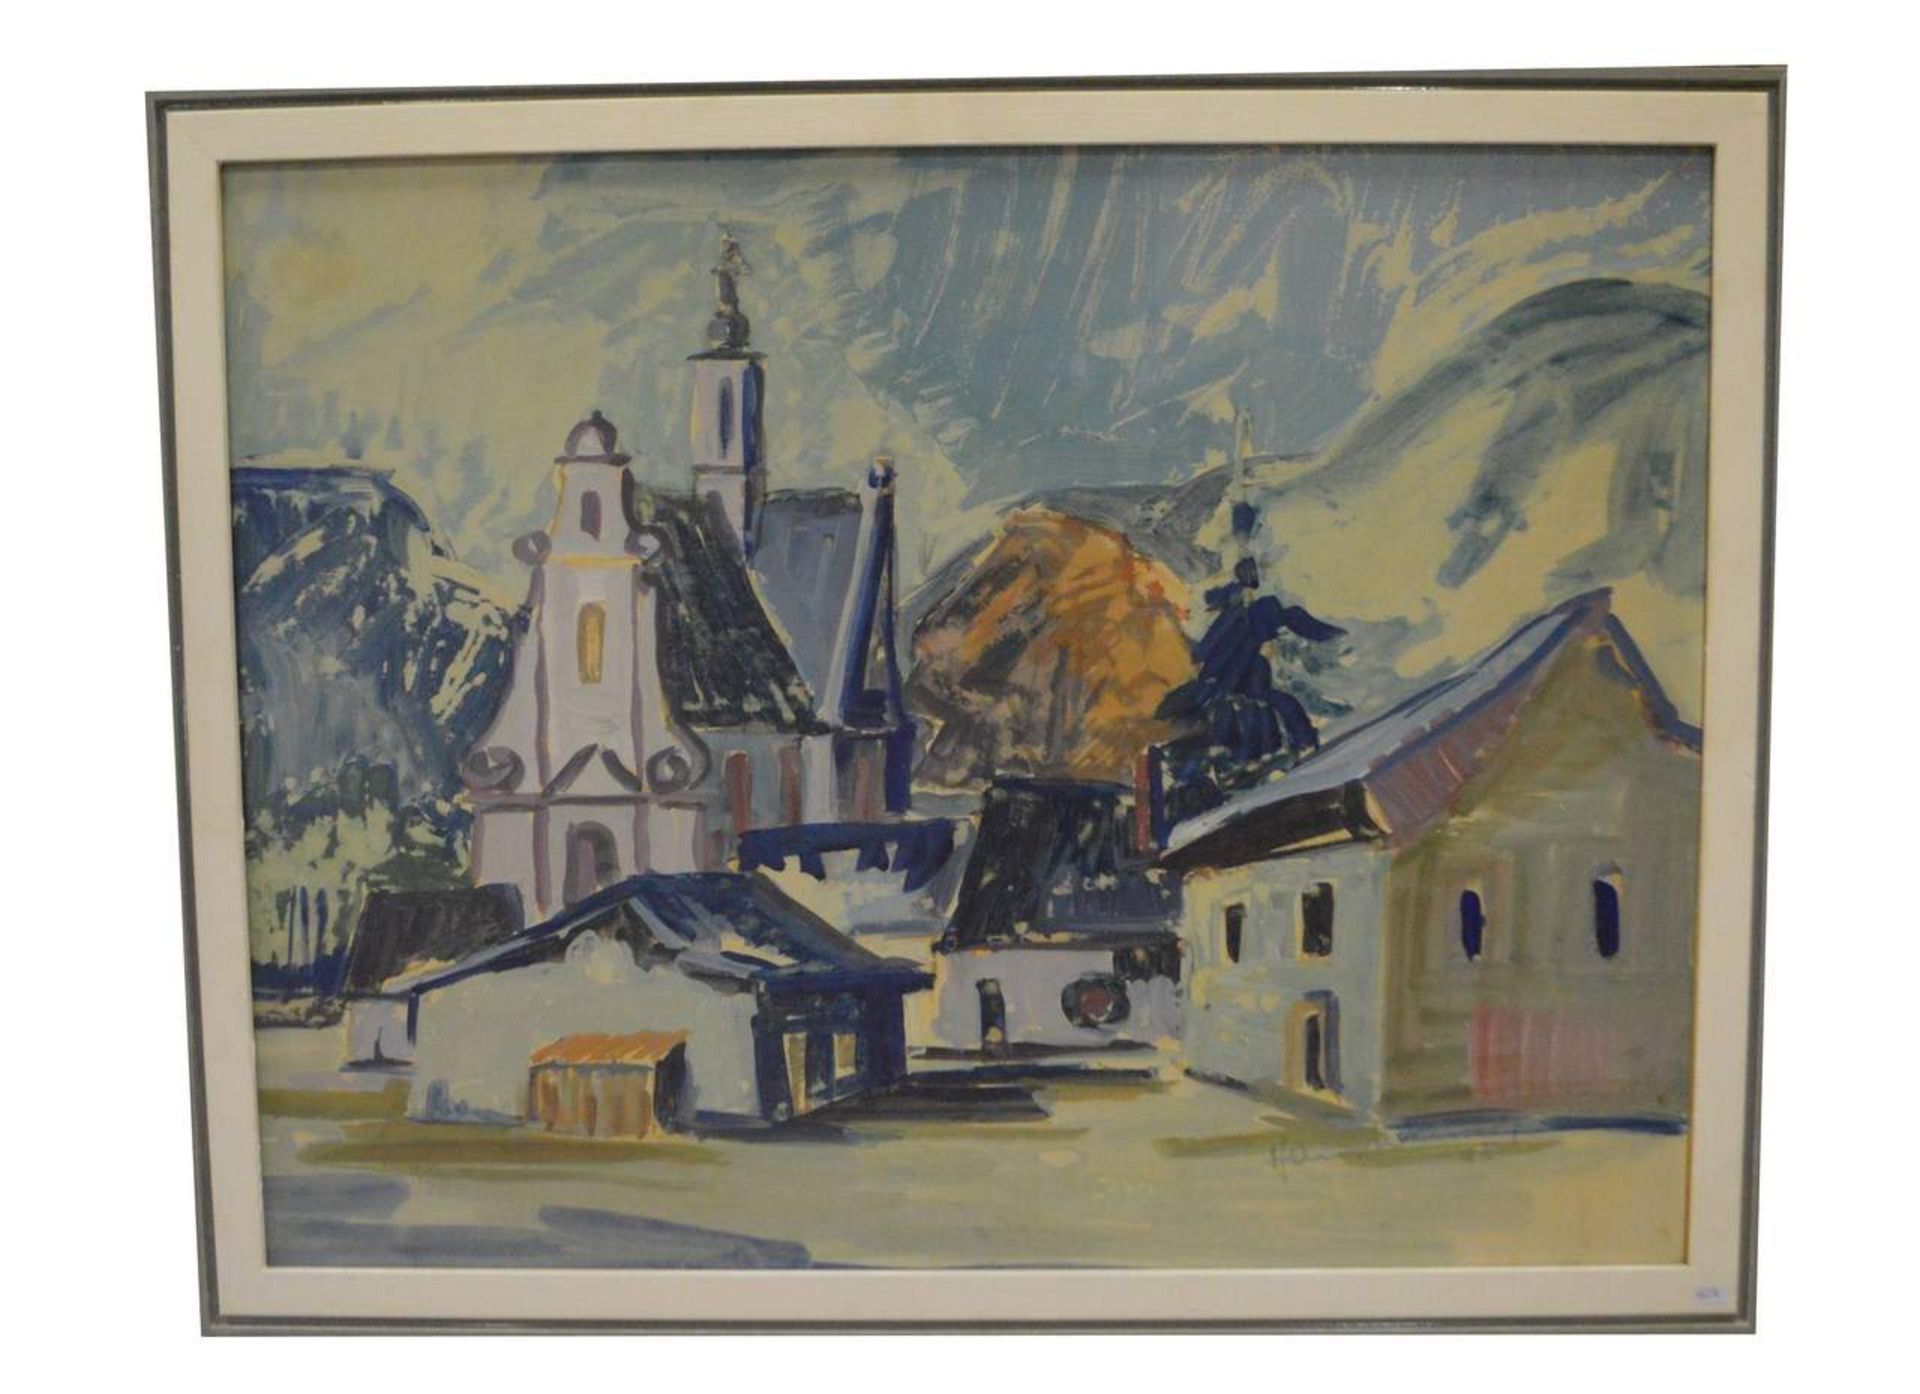 AquarellTeilansicht eines Dorfes mit Kirche, u.r.sign. Hanns Altmeier und dat. 75, im Rahmen, 66 X